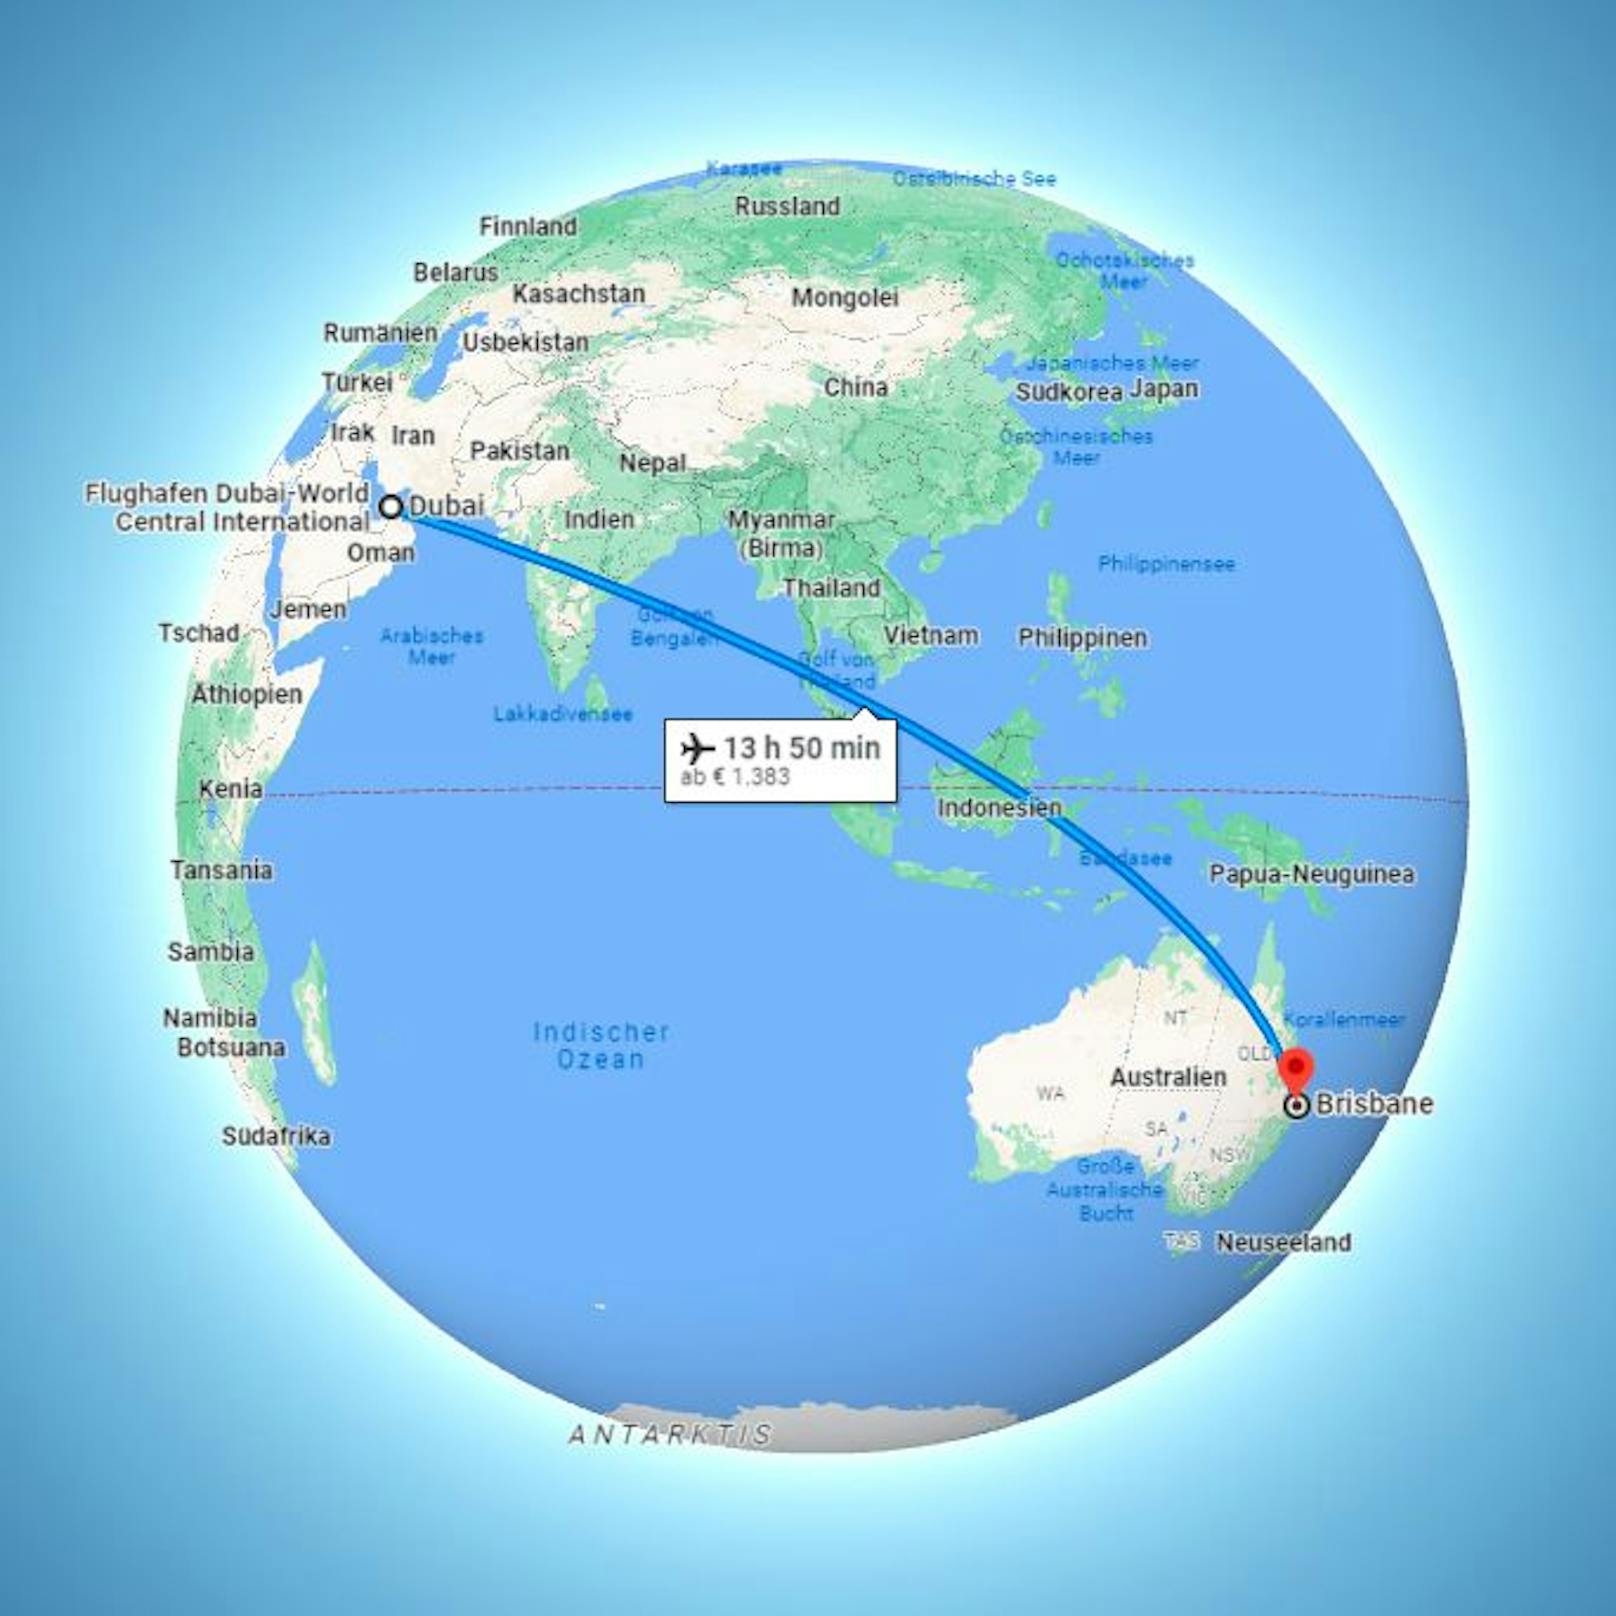 Mehr als 13 Stunden ist man von Dubai bis nach Brisbane in der Luft.